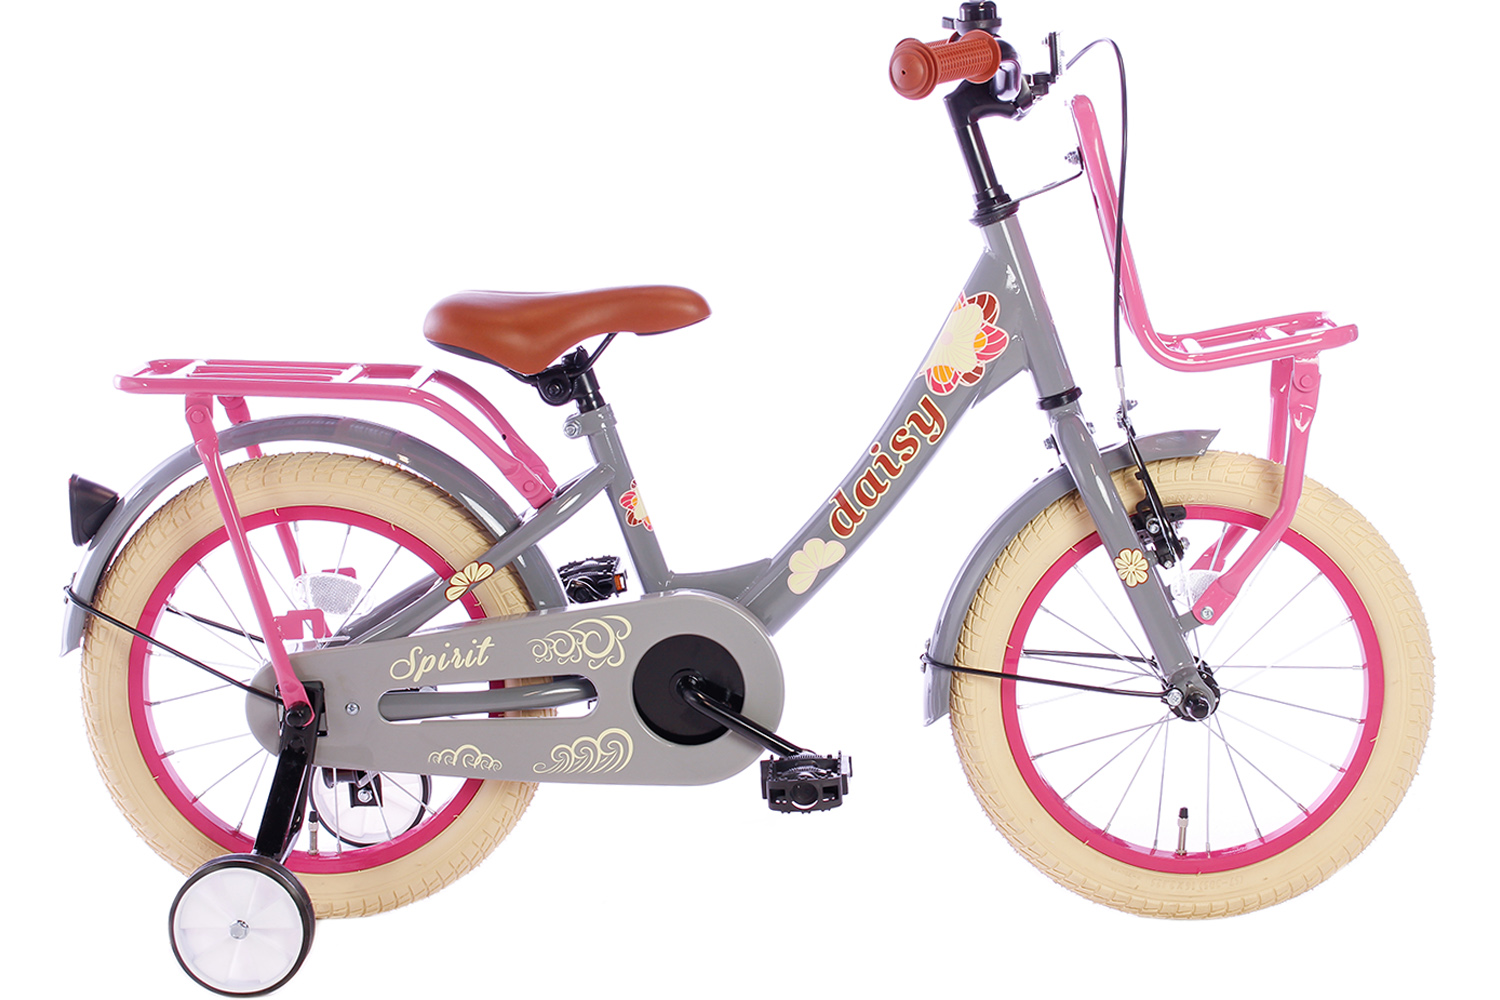 Spirit Daisy Grijs-Roze 16 Inch - Meisjesfiets City-Bikes.nl